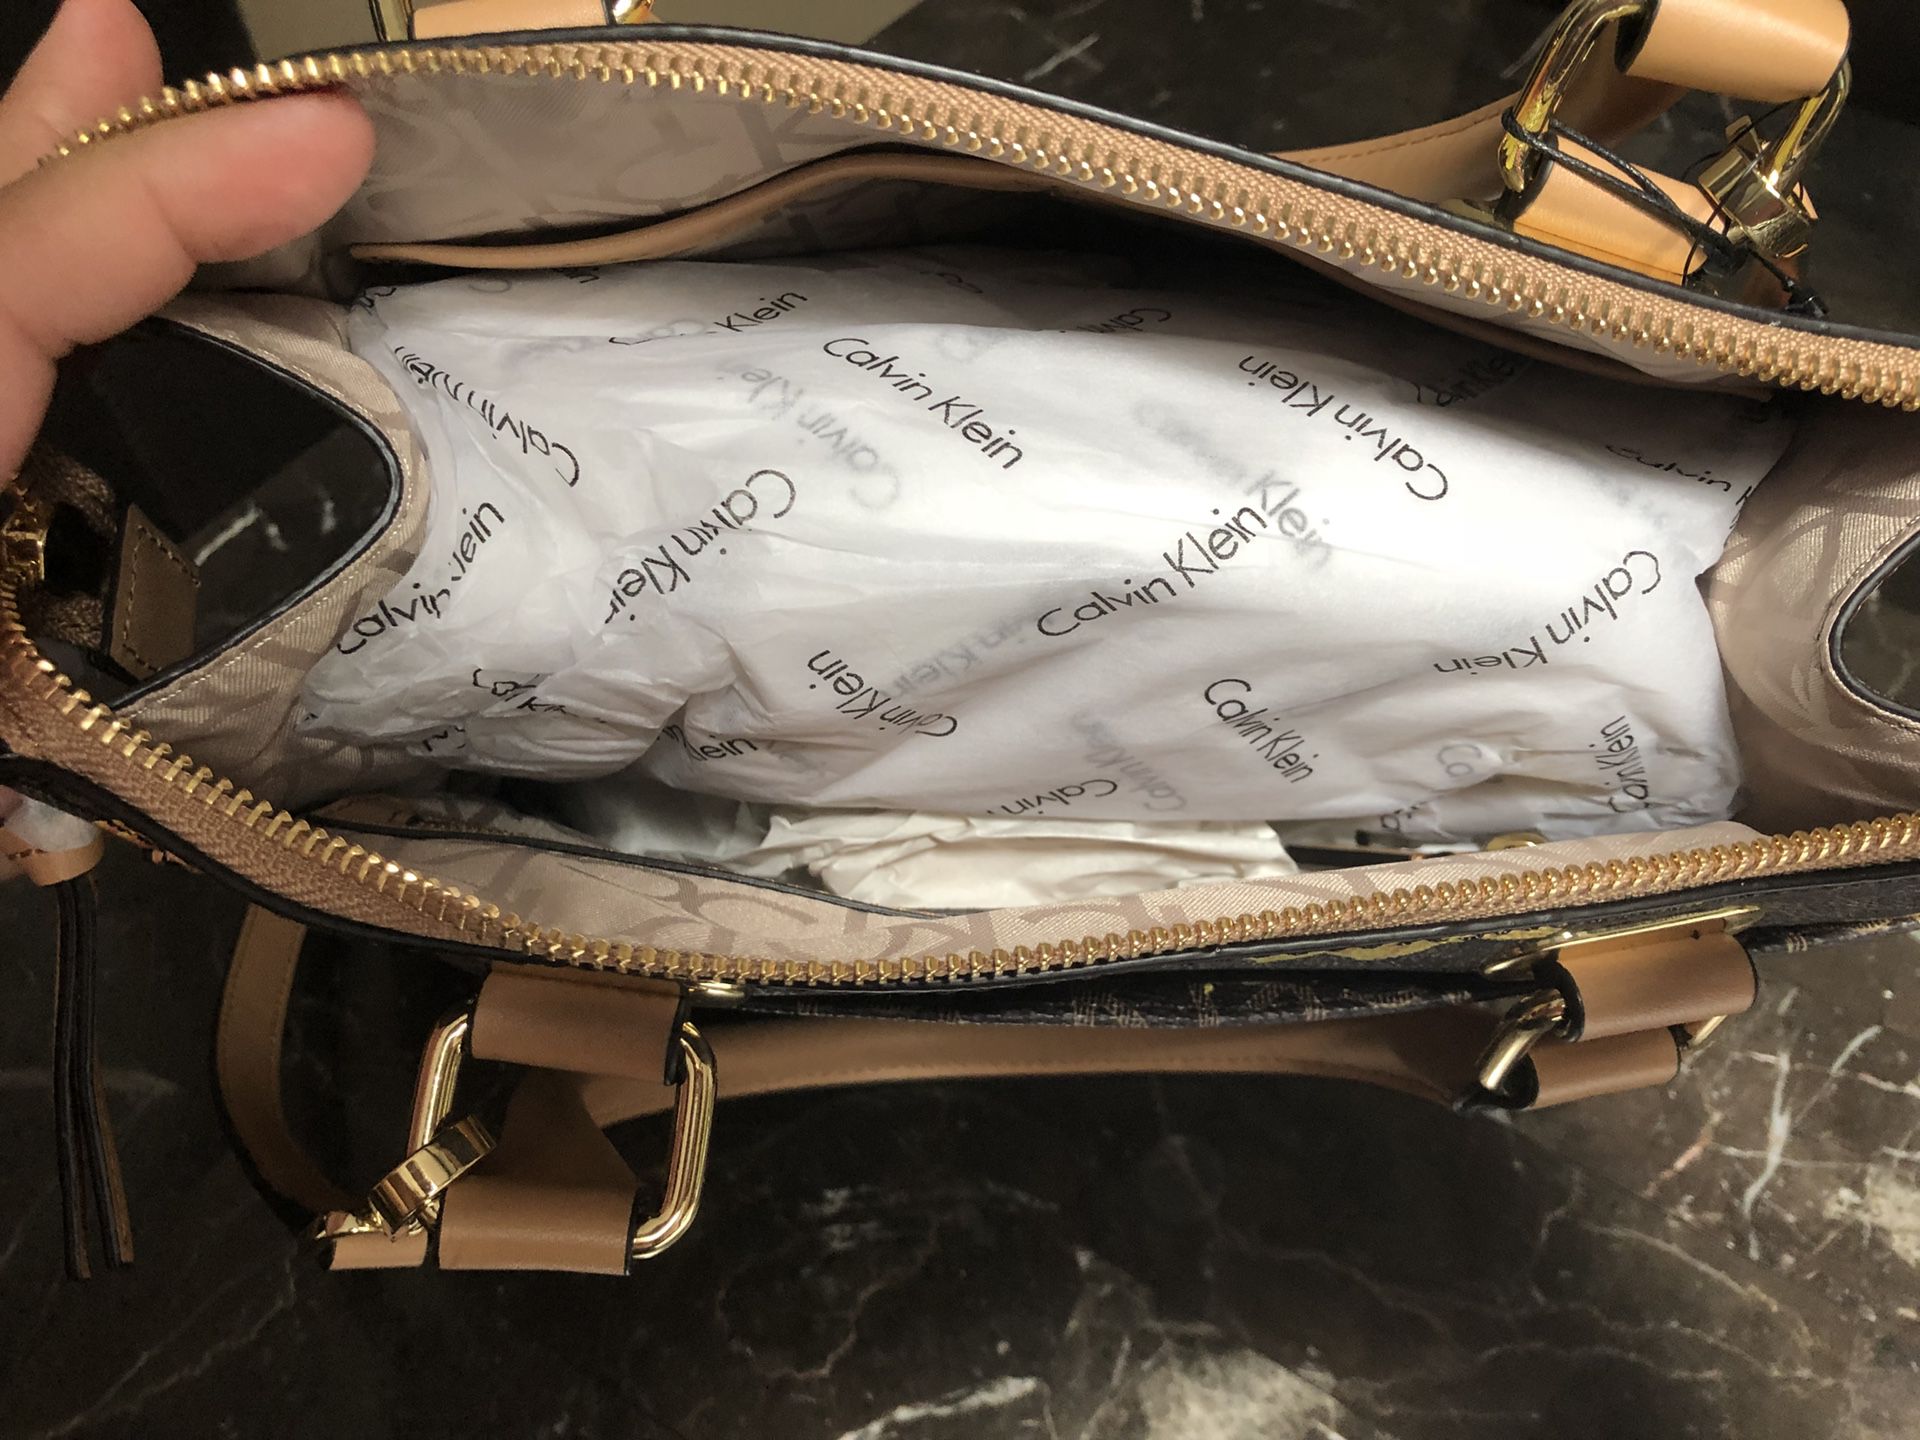 Calvin Klein Crossbody Bag – Faz